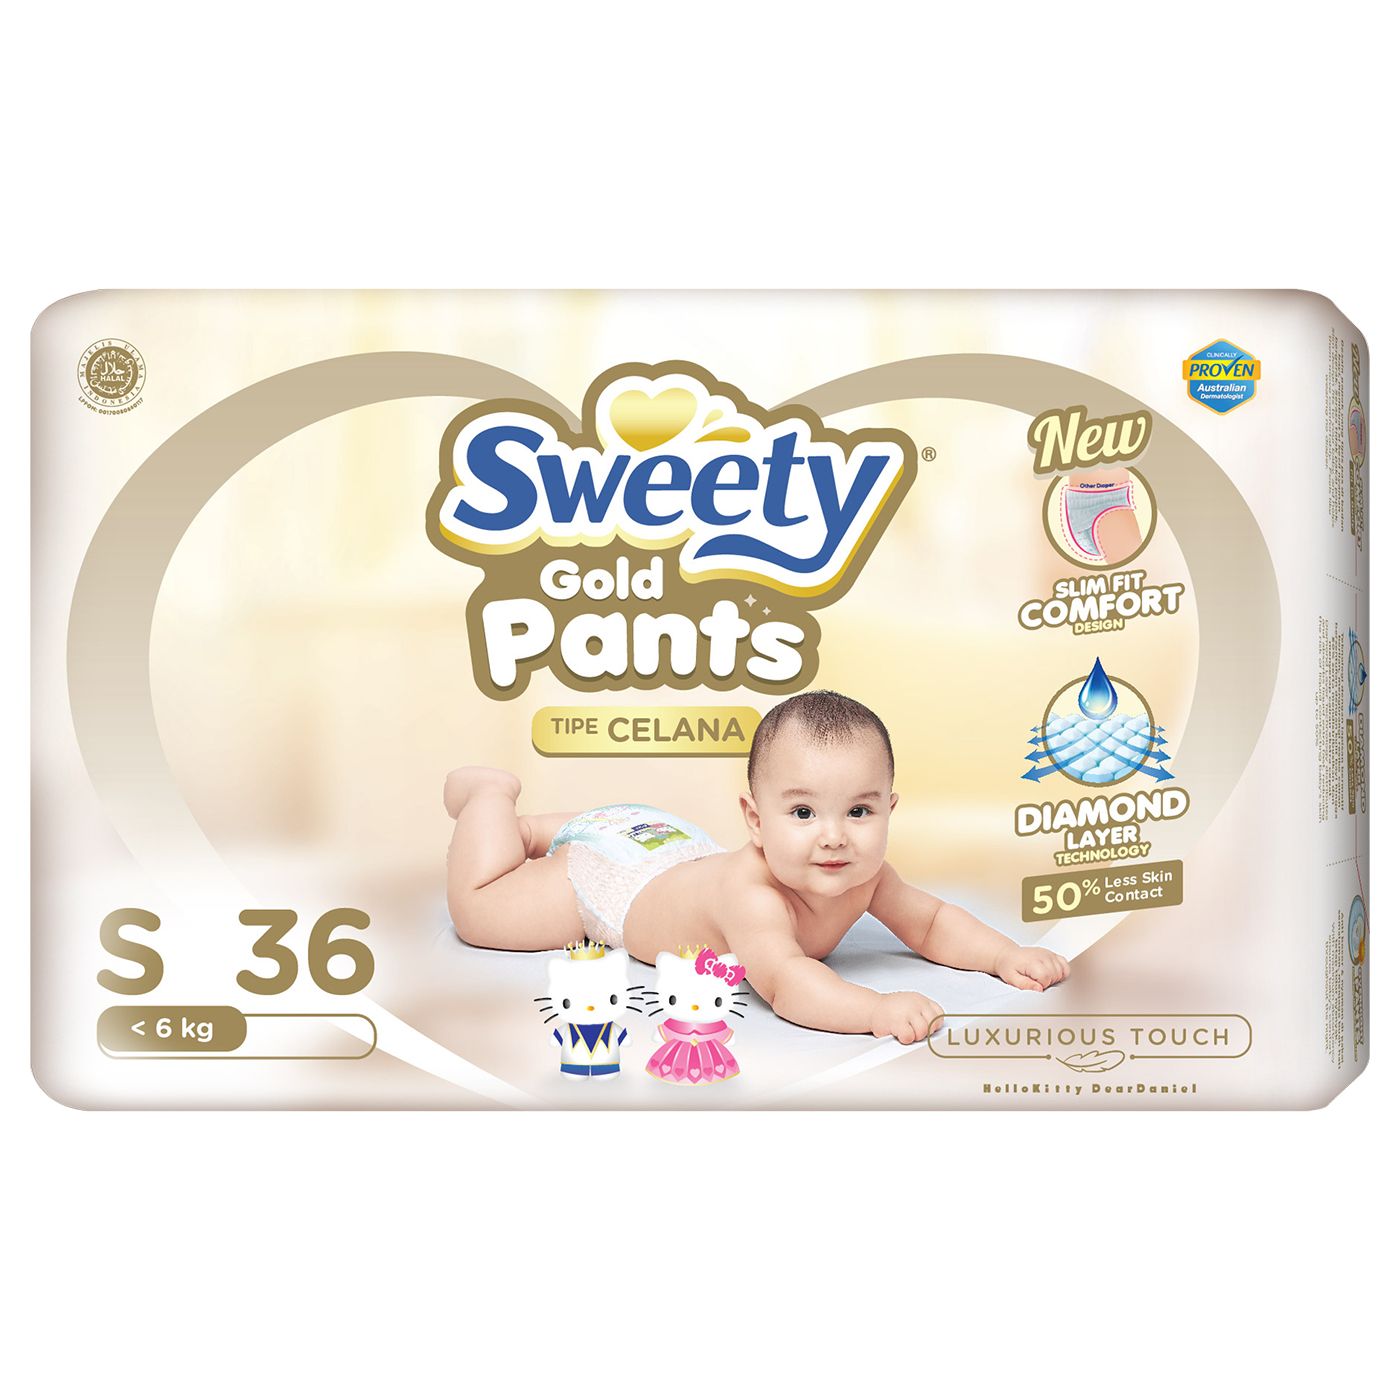 Sweety Pantz Gold Regular Pack S 36 - 2